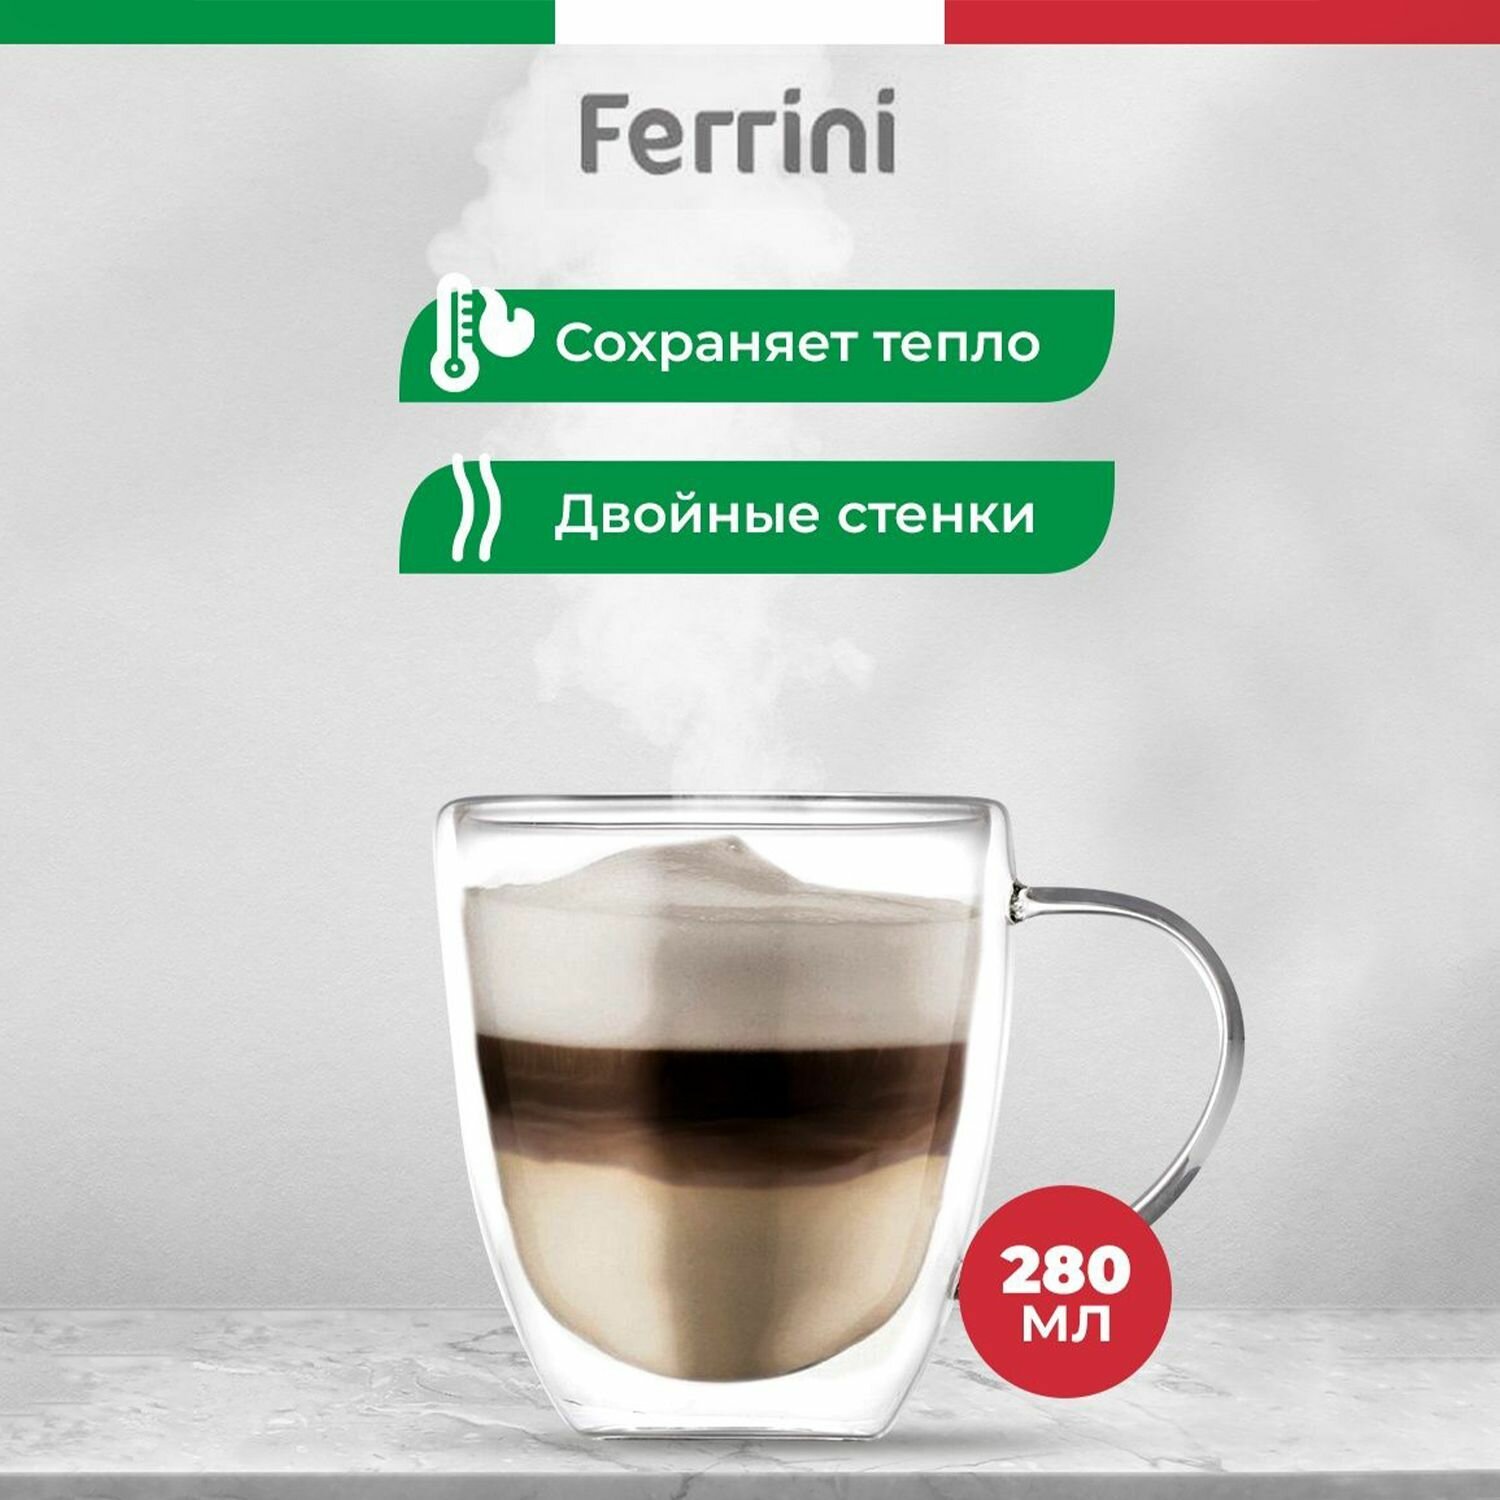 Ferrini Кружка с двойными стенками для чая и кофе, набор / 280 мл